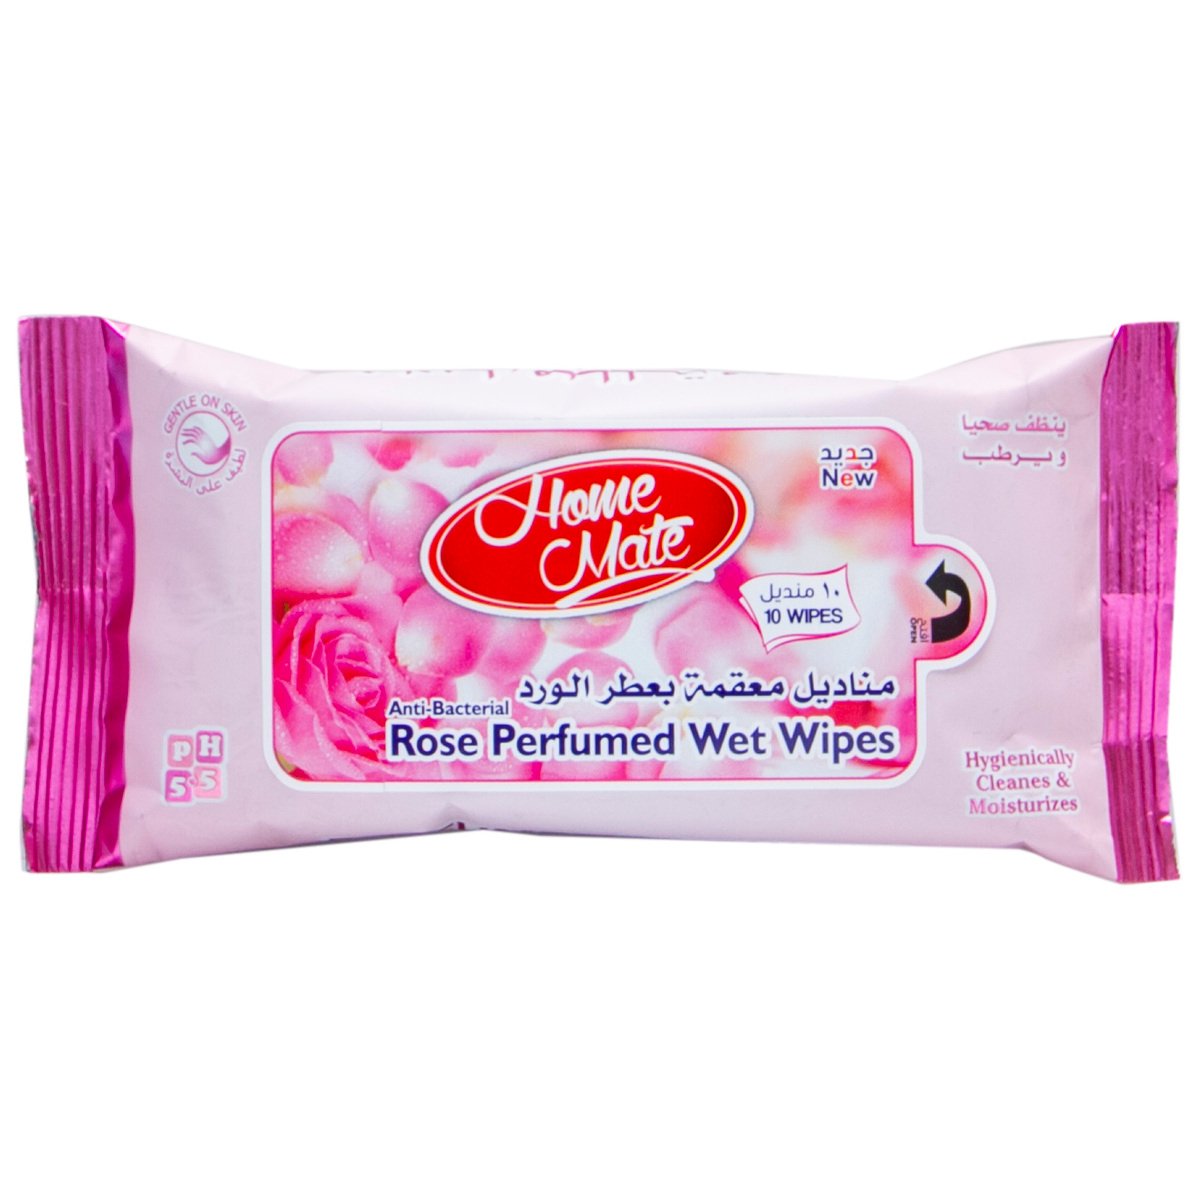 Buy Home Mate Rose Perfumed Wet Wipes 10pcs Online at Best Price | Travel Tissue &Wipes | Lulu UAE in UAE